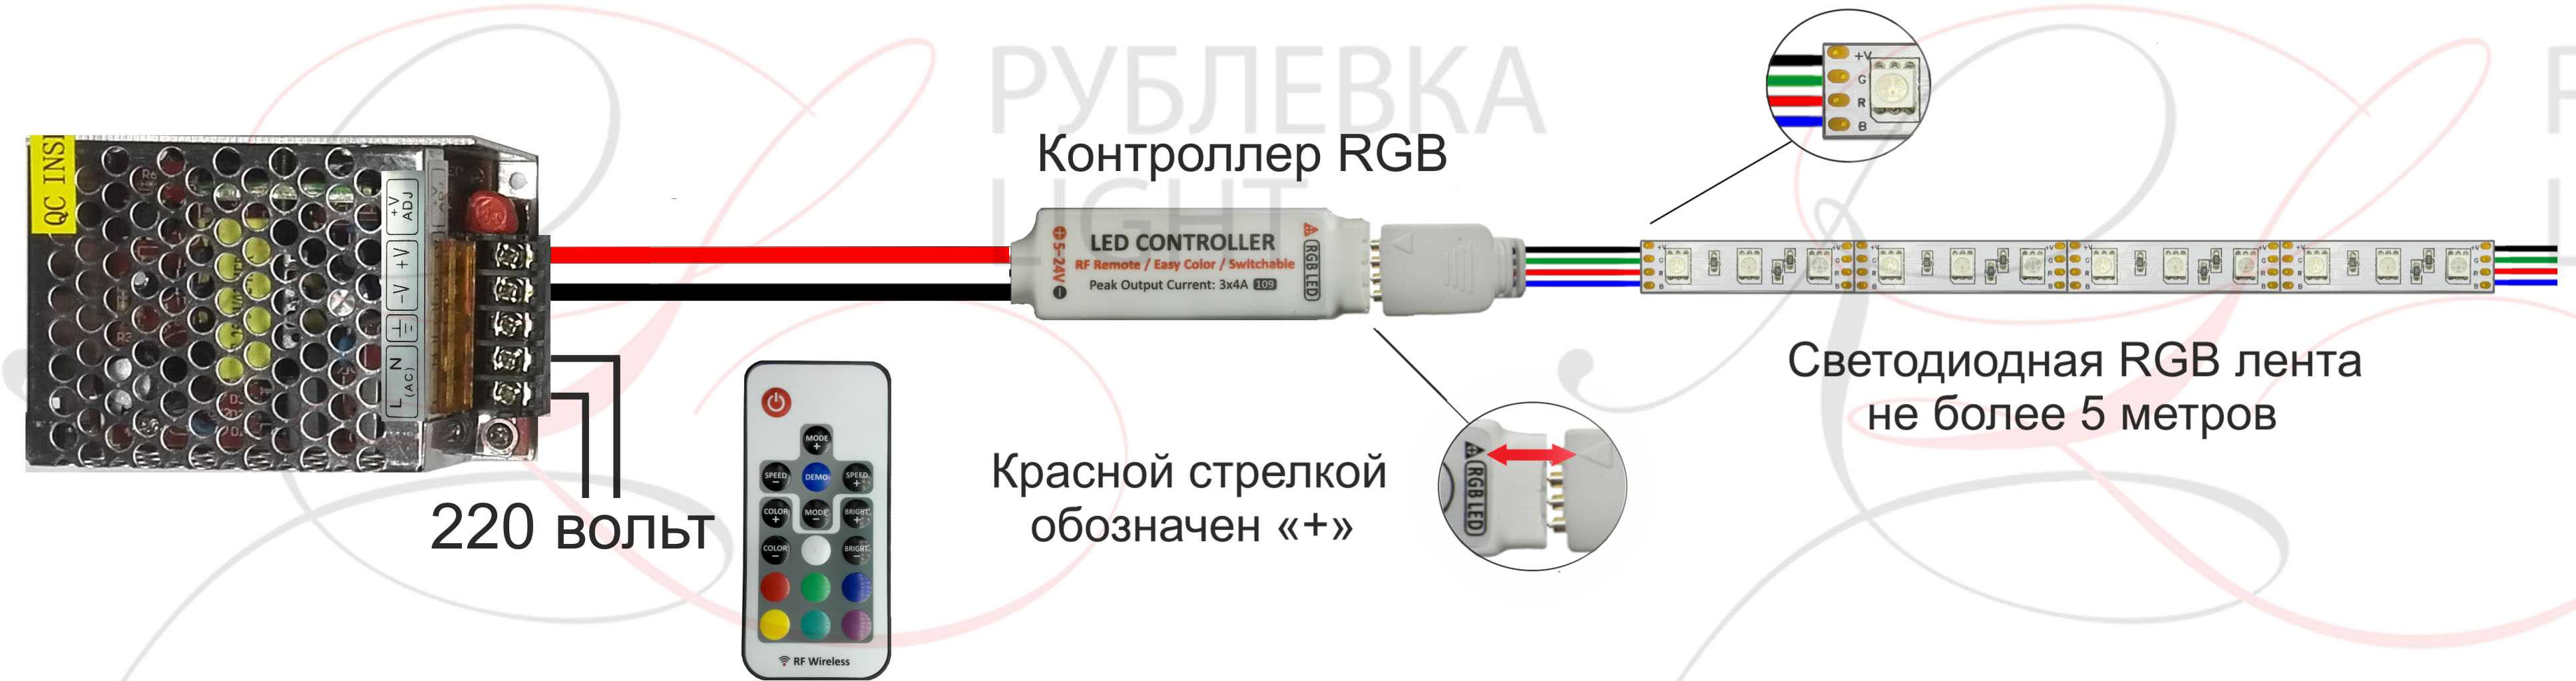 Как подключить rgb led ленту к контроллеру и блоку питания